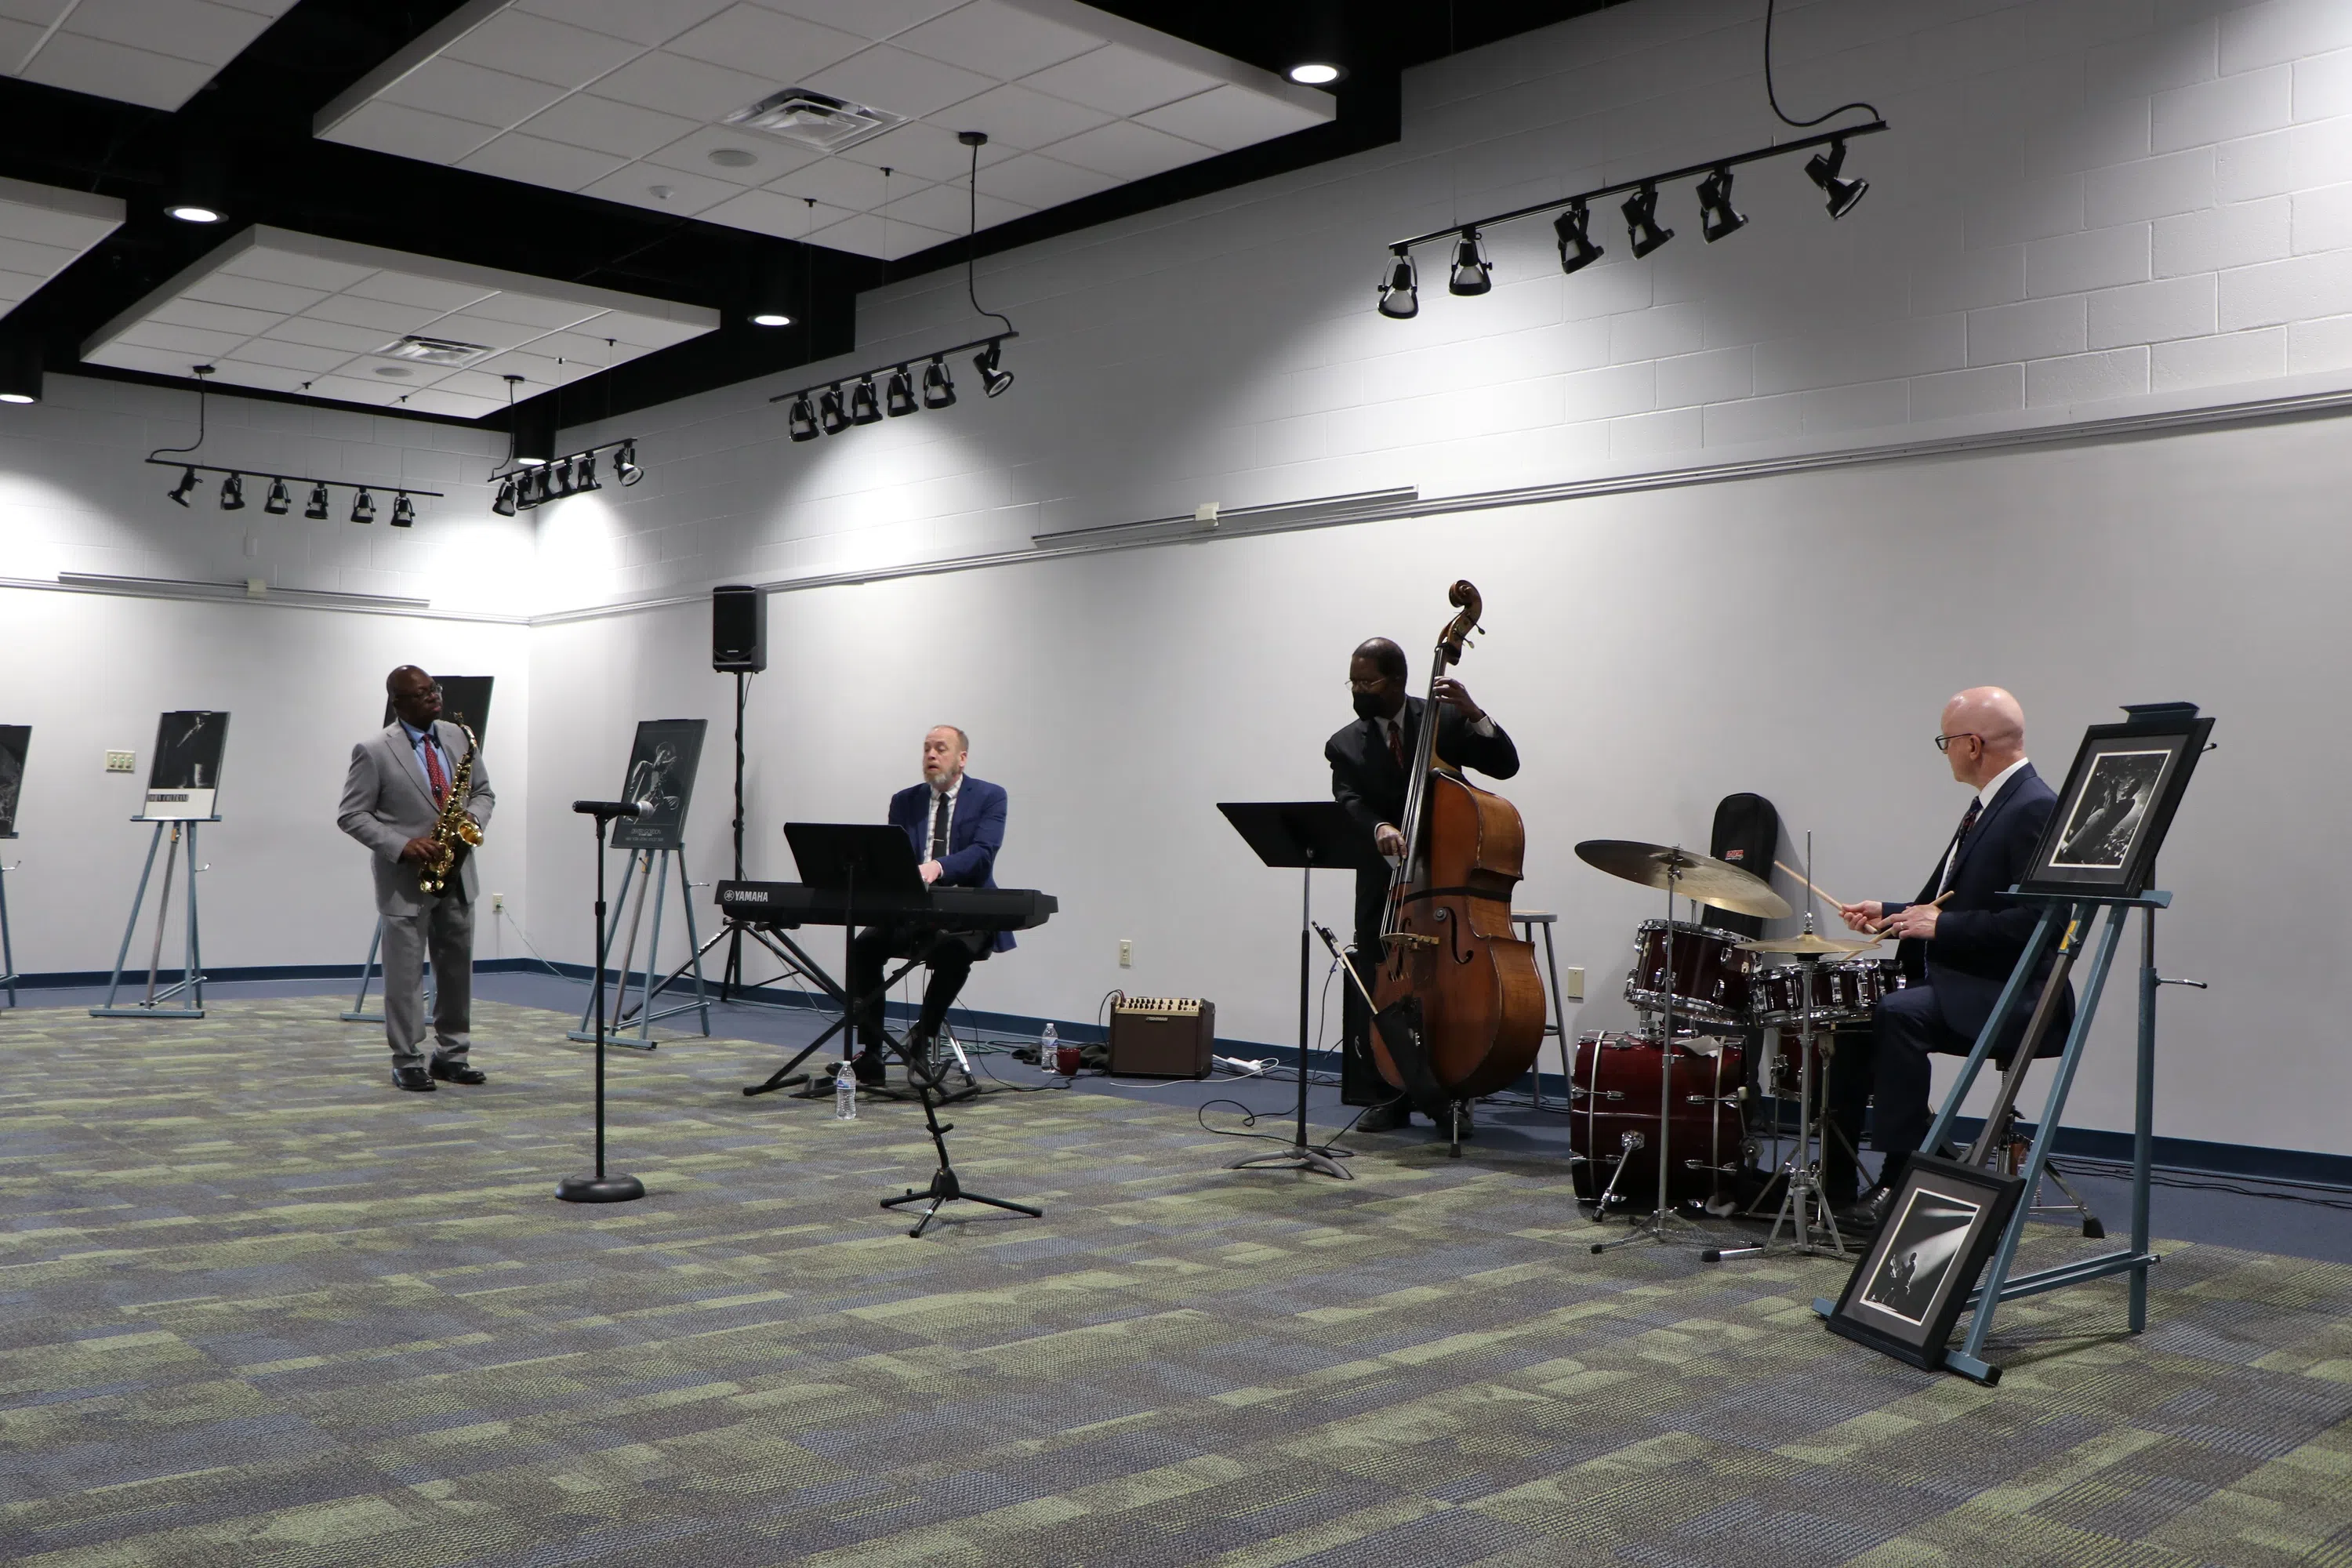 Jazz Quartet gives concert in Morrison Gallery.